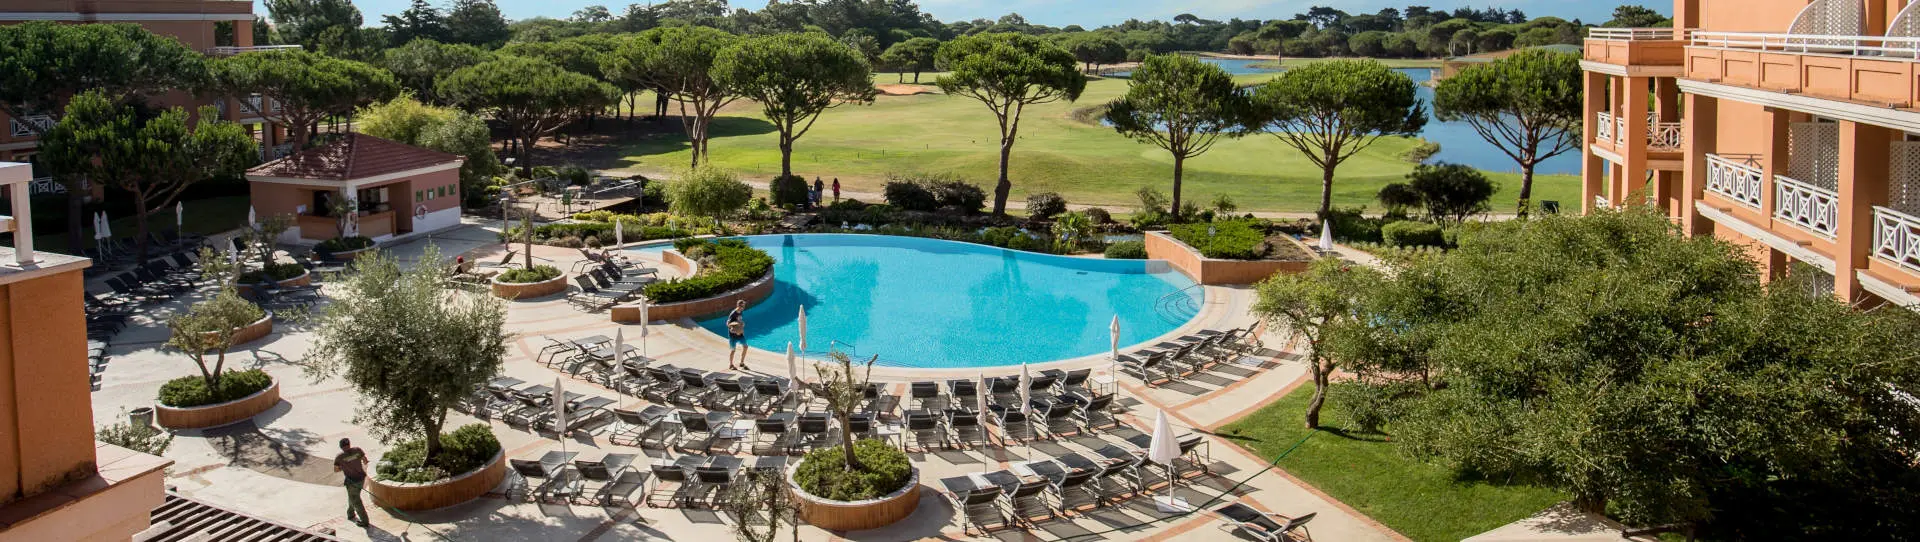 Portugal golf holidays - Onyria Quinta da Marinha Hotel Resort - Photo 1